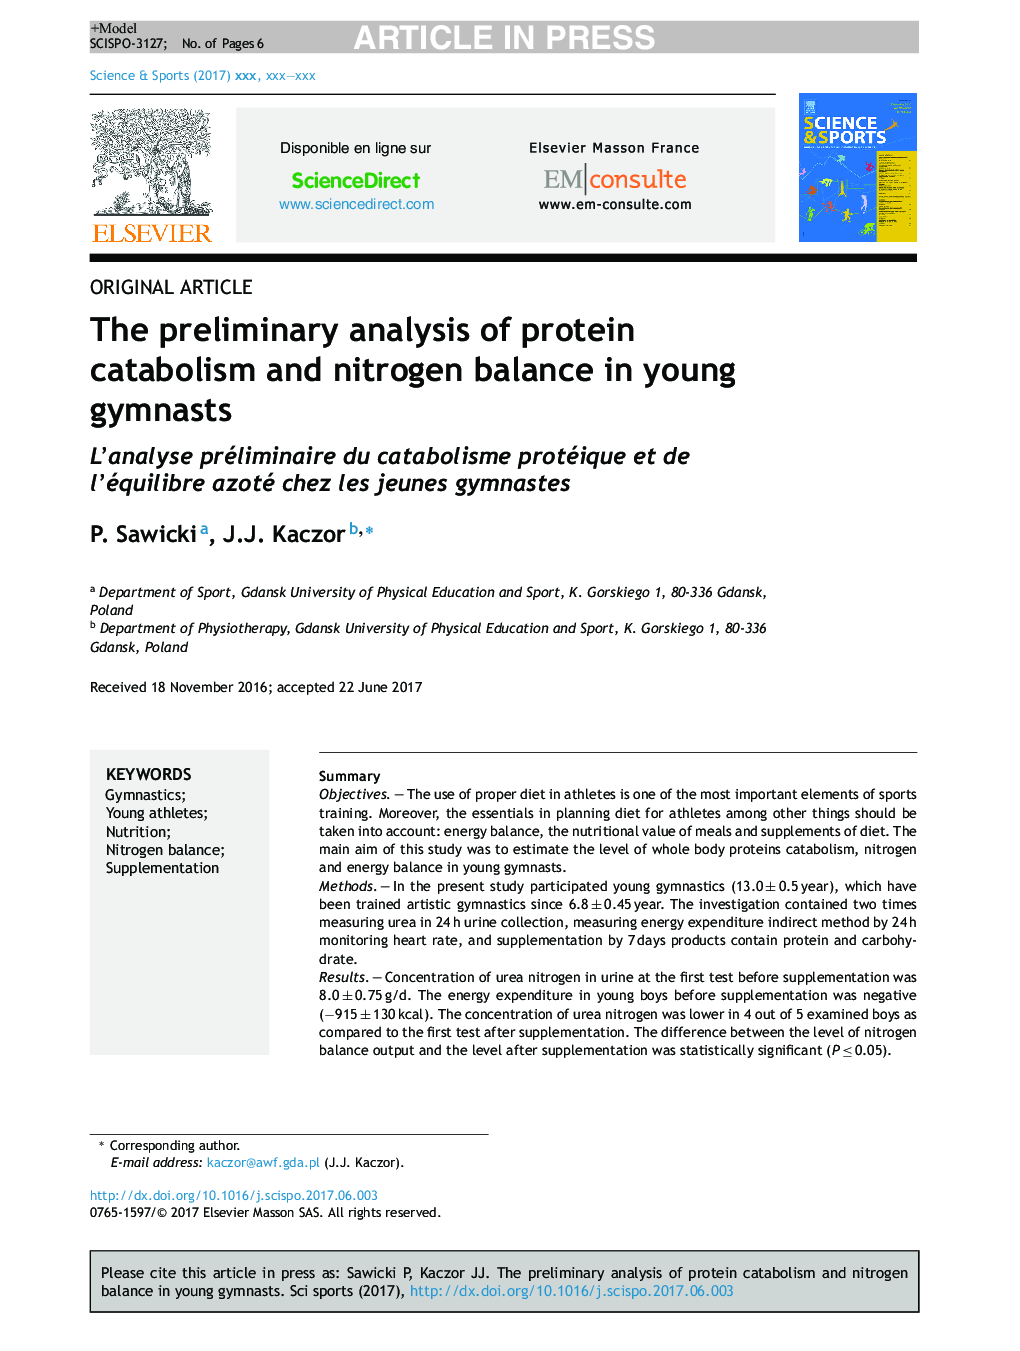 تجزیه و تحلیل اولیه کاتابولیسم پروتئین و تعادل نیتروژن در ژیمناستهای جوان 